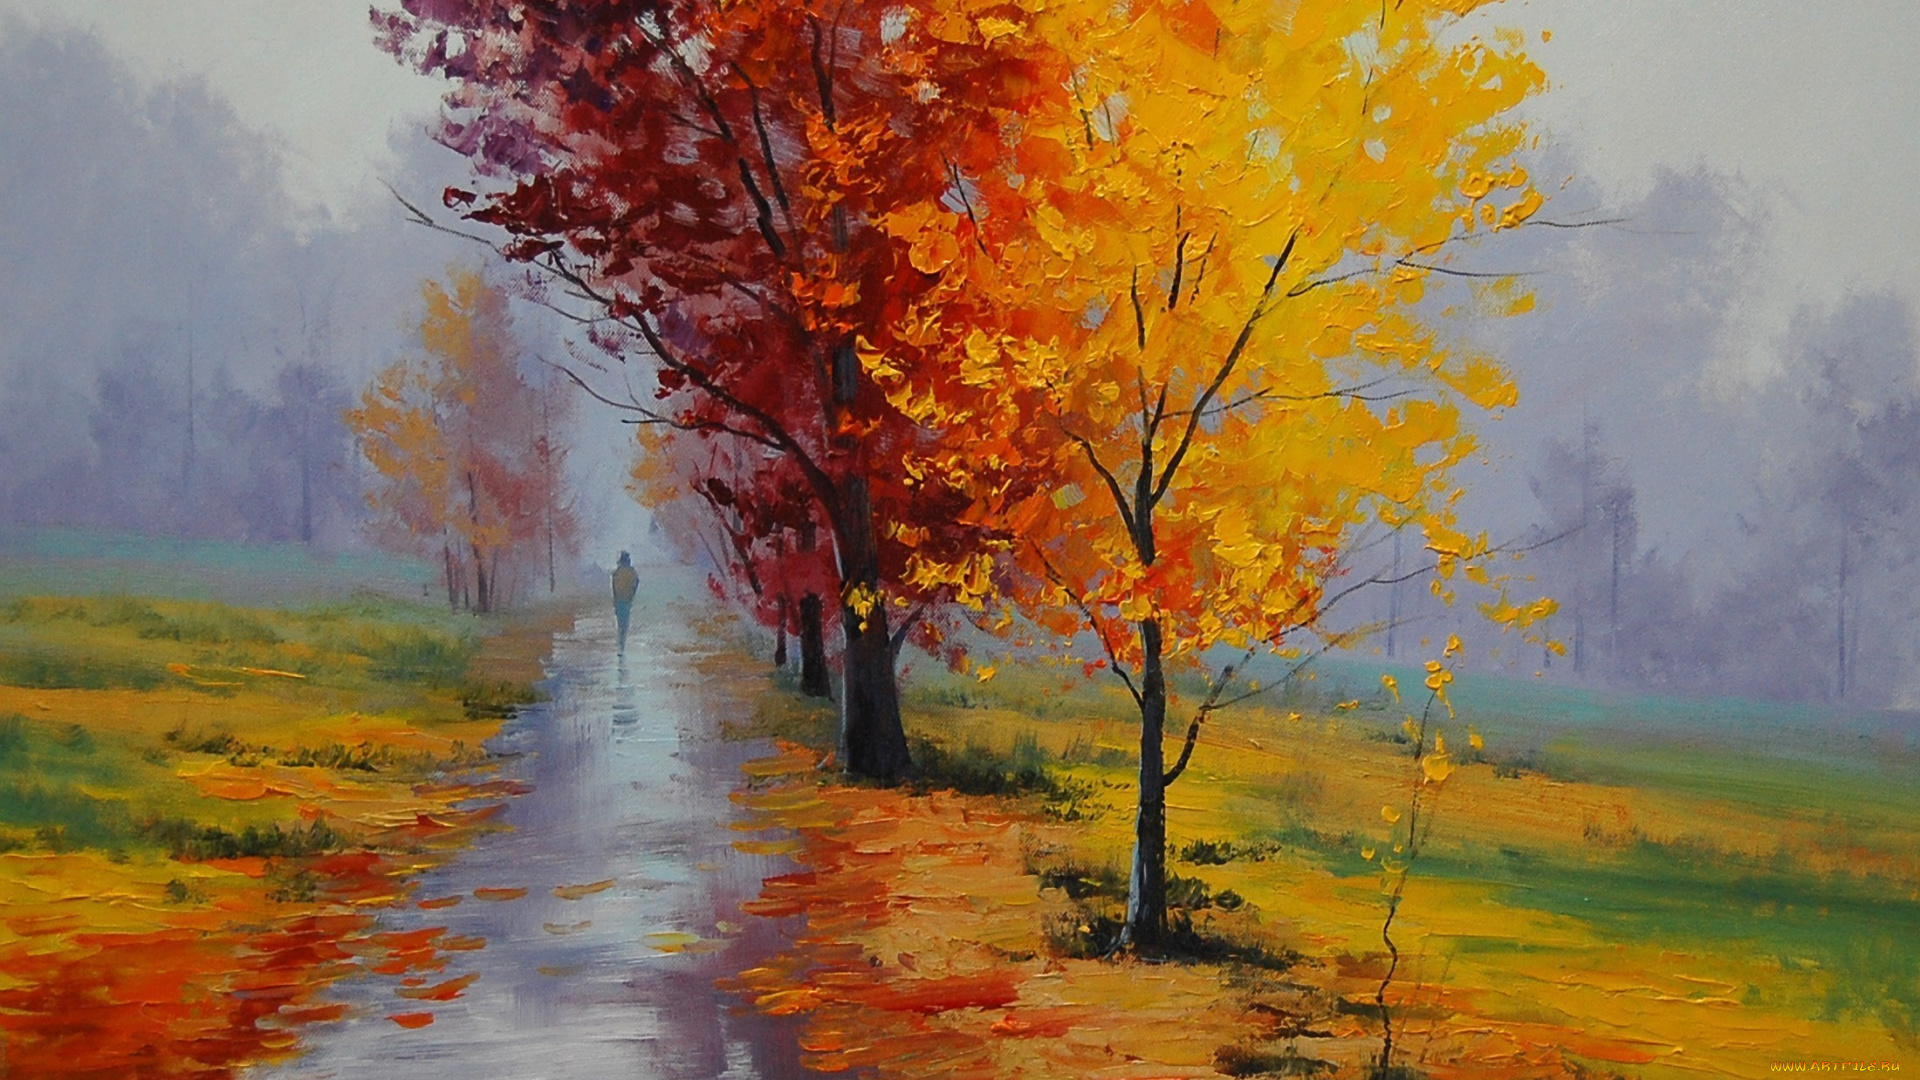 рисованные, живопись, человек, дорожка, дождь, туман, парк, деревья, осень